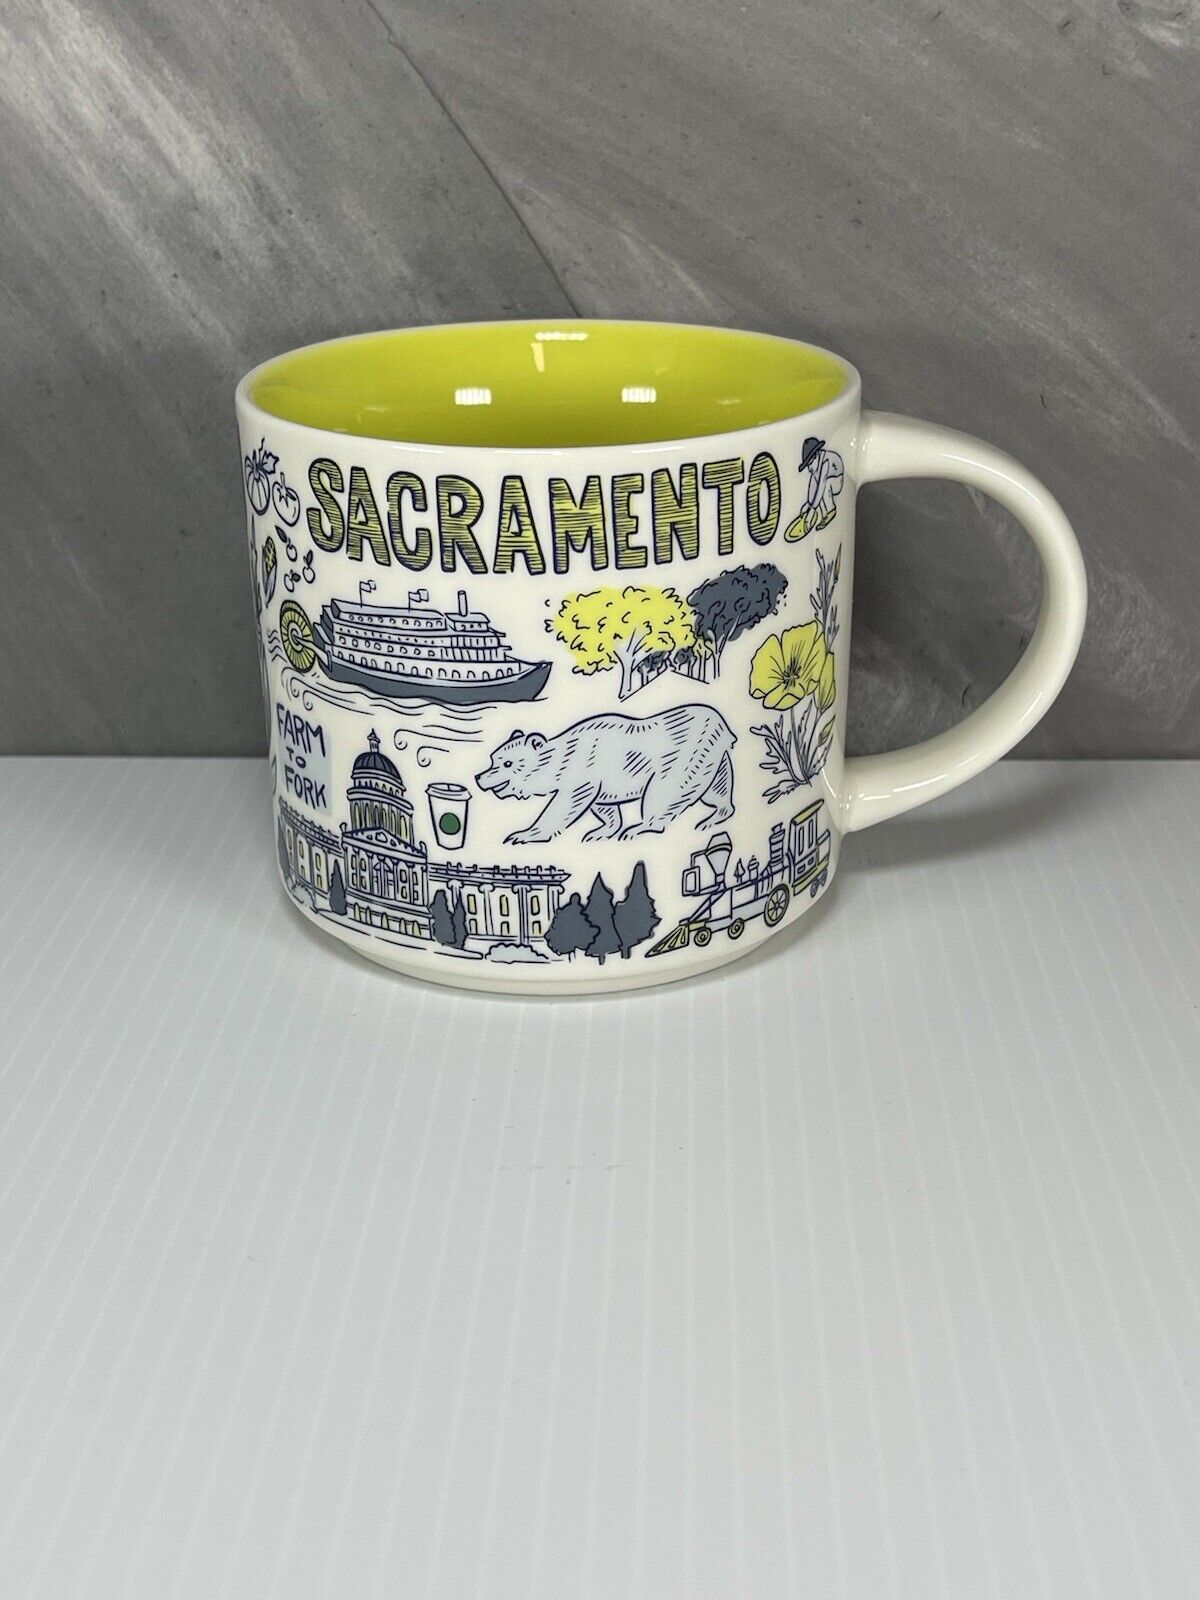 Starbucks Sacramento Coffee Mug  Been There Series  Collection 